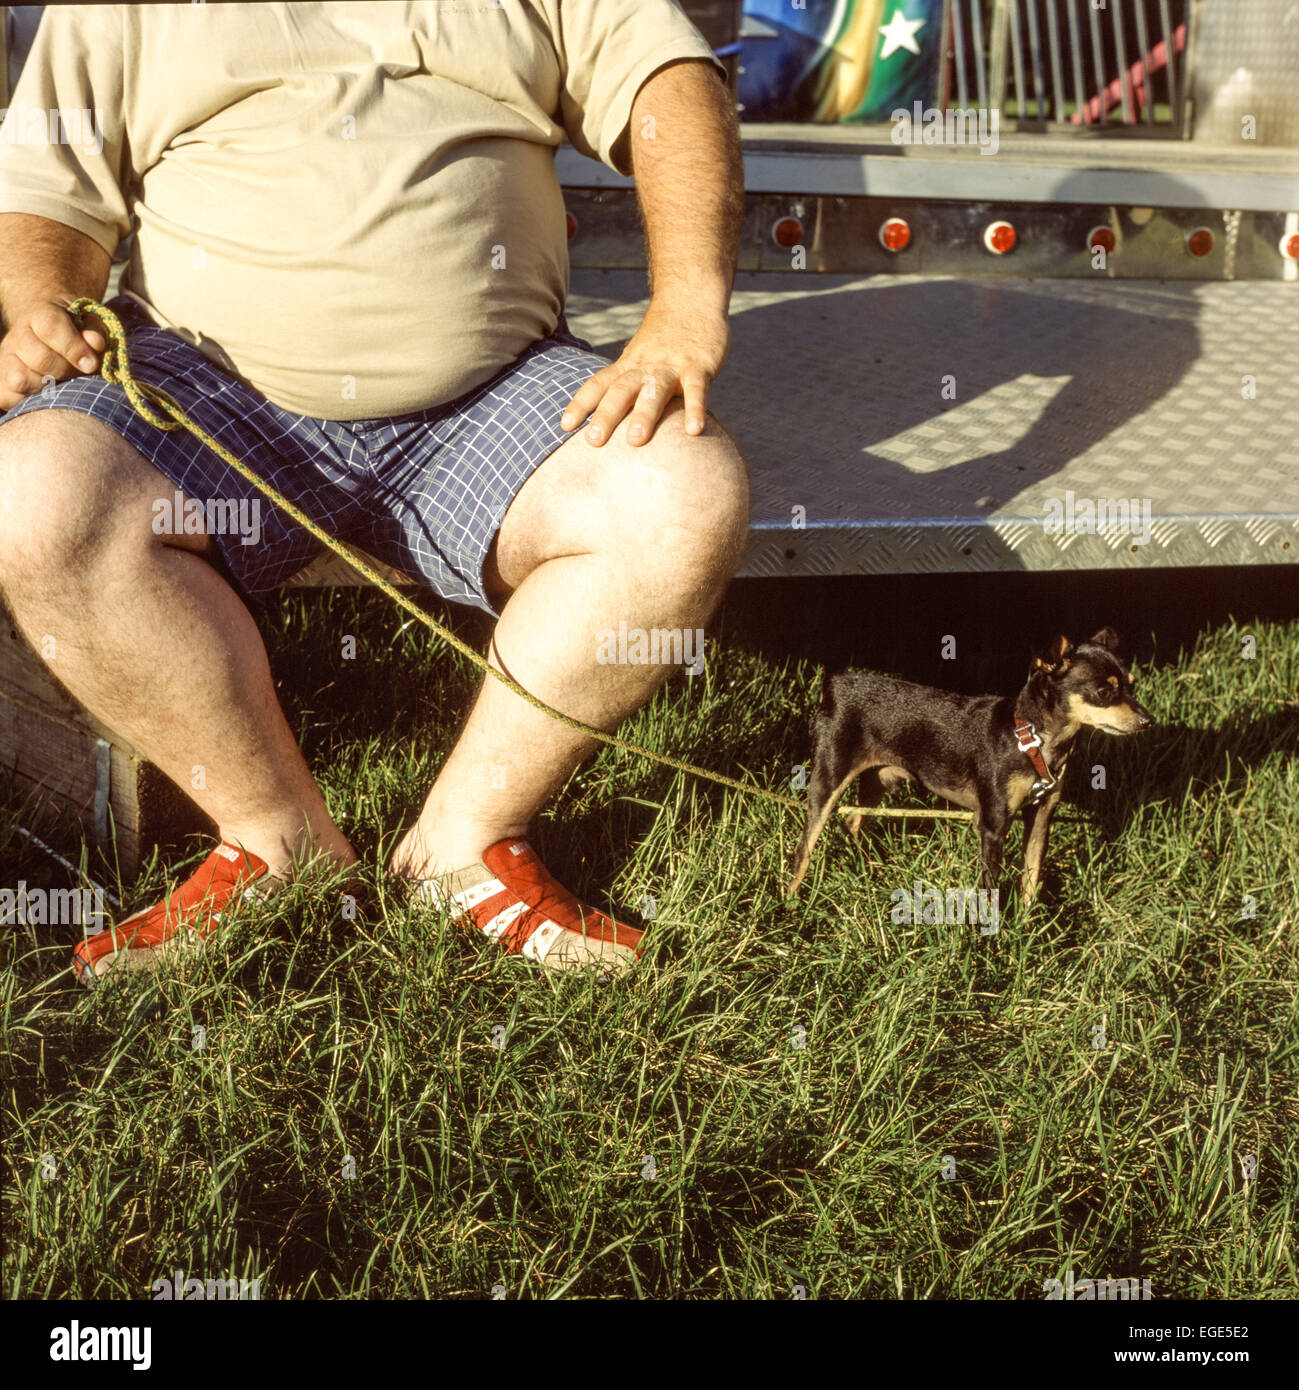 Man with a dog, Prague Ratter pet Stock Photo